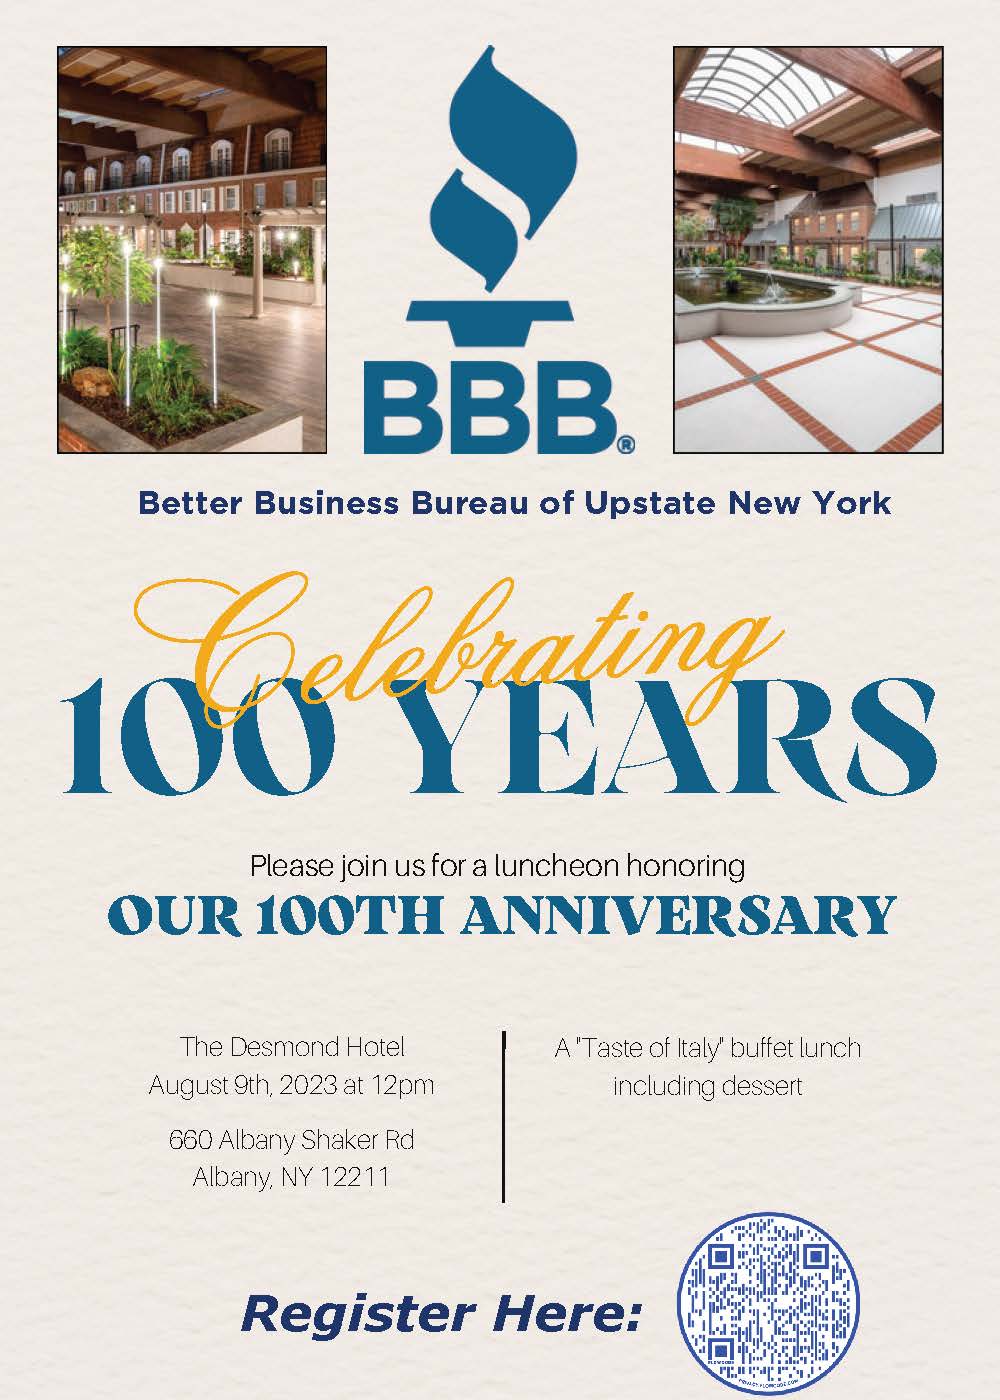 Better Business Bureau of Upstate NY Celebrates 100 years!